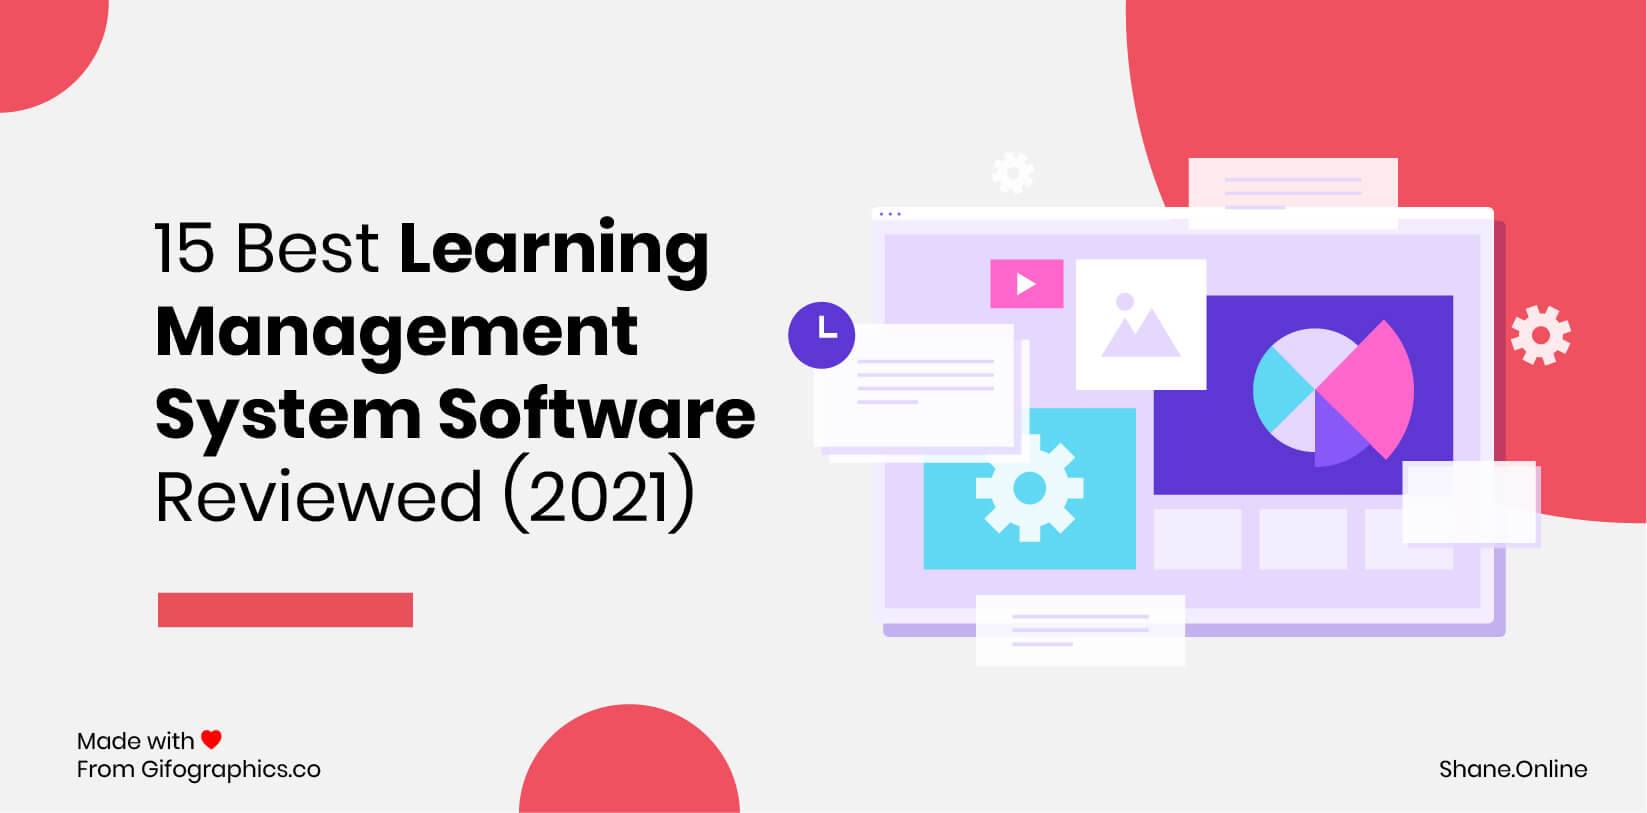 تمت مراجعة أفضل 15 برنامجًا لنظام إدارة التعلم (2021)